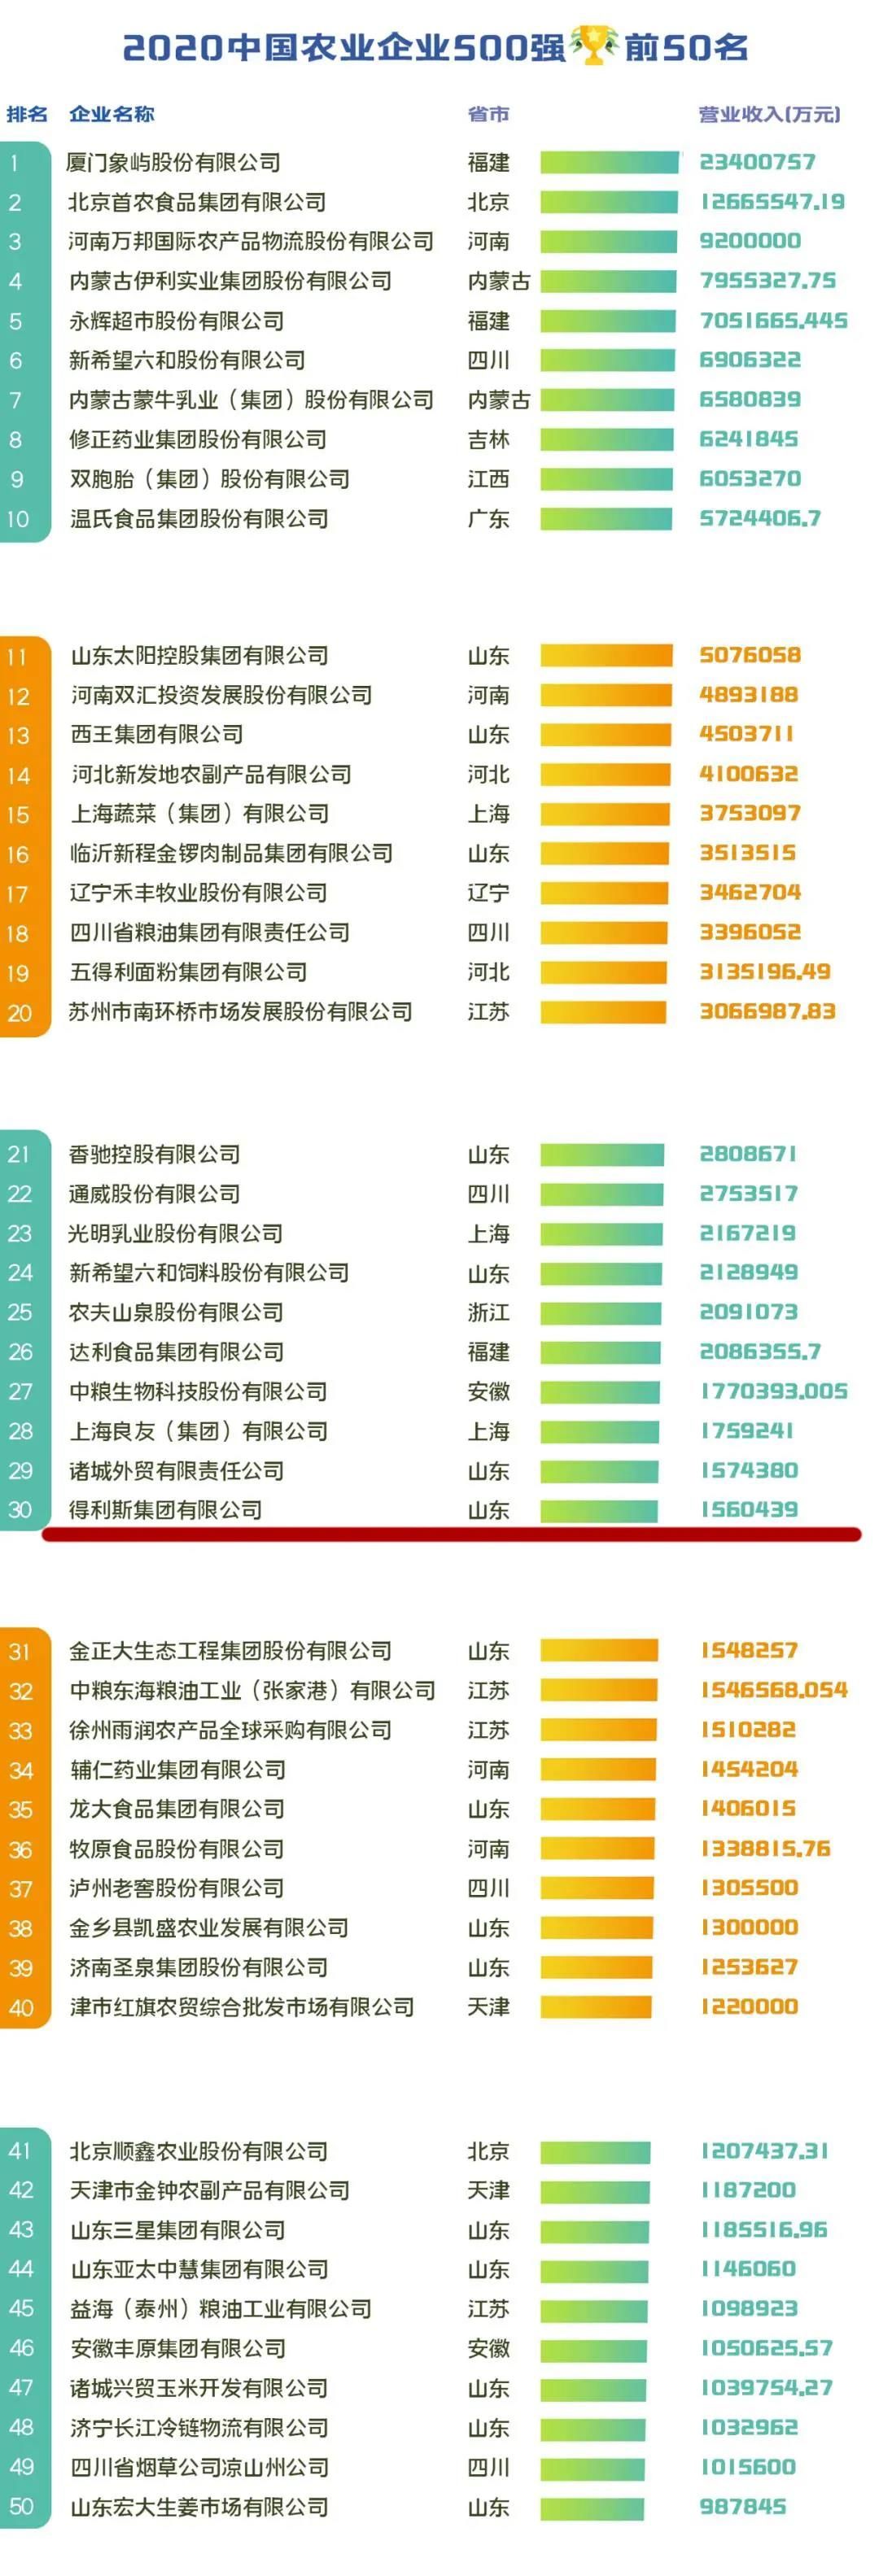 山东潍坊得利斯集团上榜“2020中国农业企业500强”，名列第30位